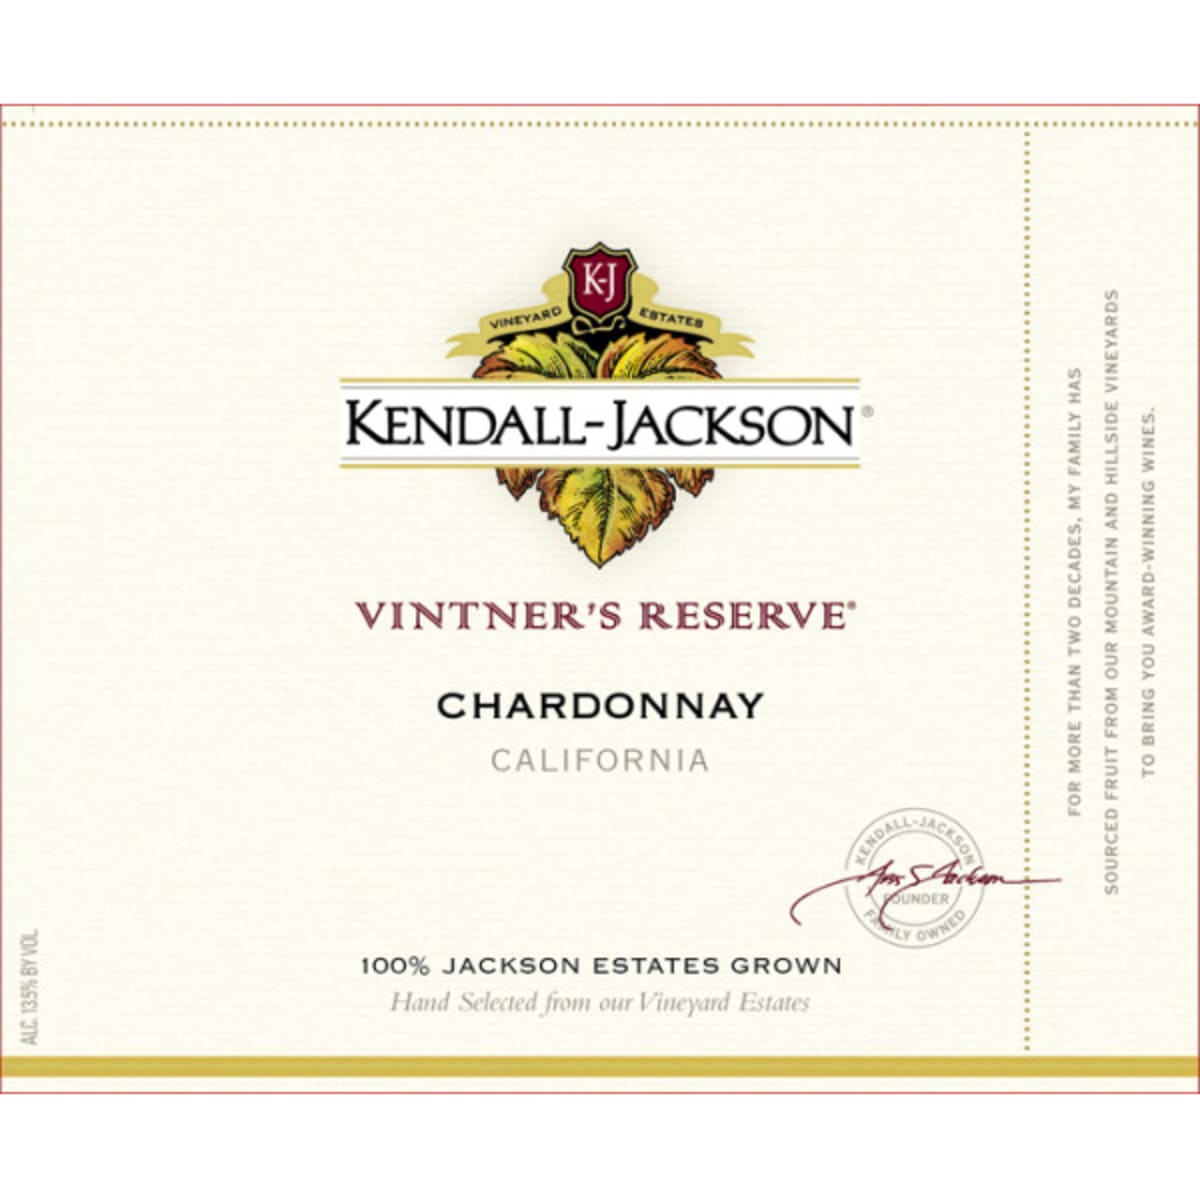 Kendall-Jackson Vintner's Reserve Chardonnay 2010 Front Label